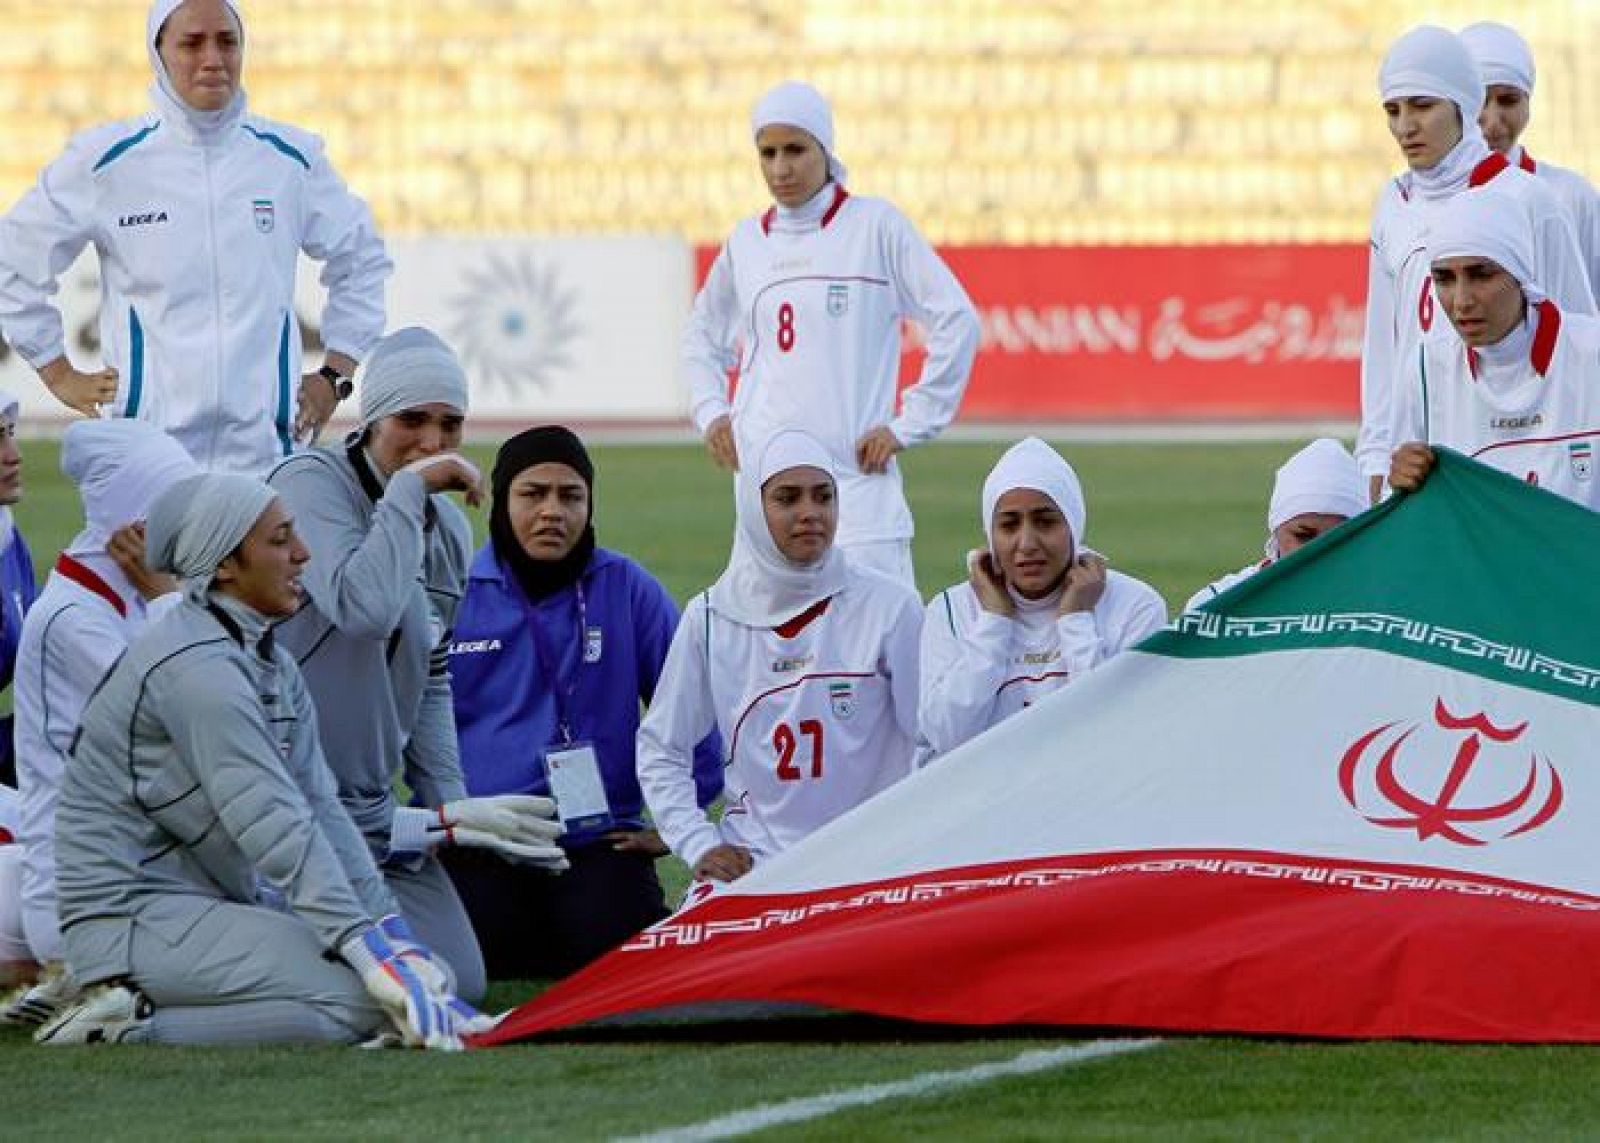 Jugadoras de la selección iraní de fútbol antes de su encuentro frente a Jordania de la fase de clasificación para los próximos Juego Olímpicos.